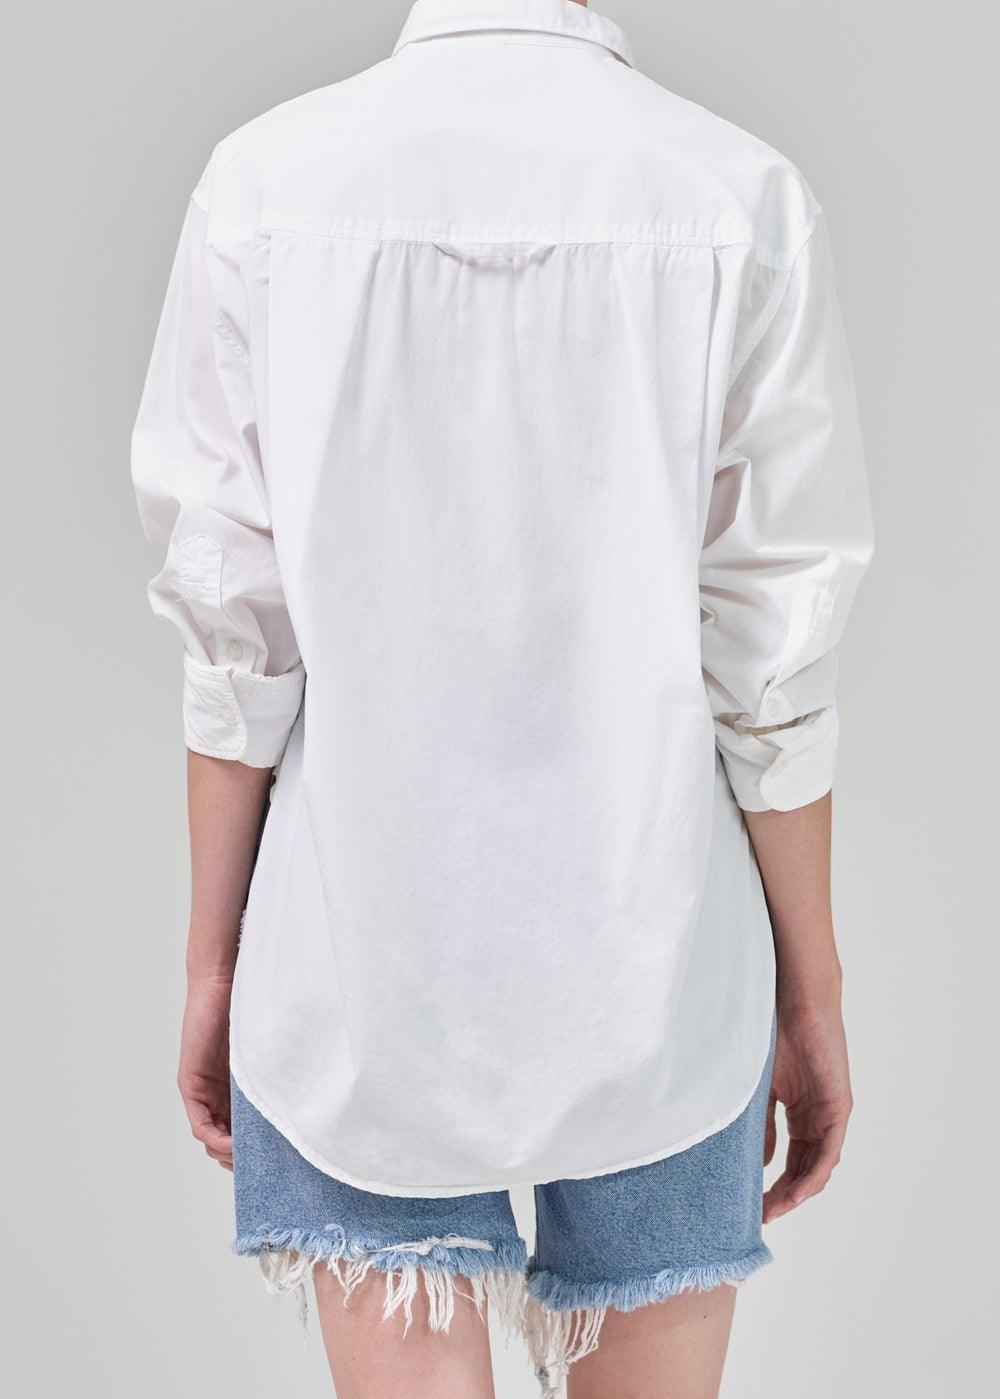 Citizens of Humanity - Kayla White Optic Oversized Shirt - 32 The Guild 